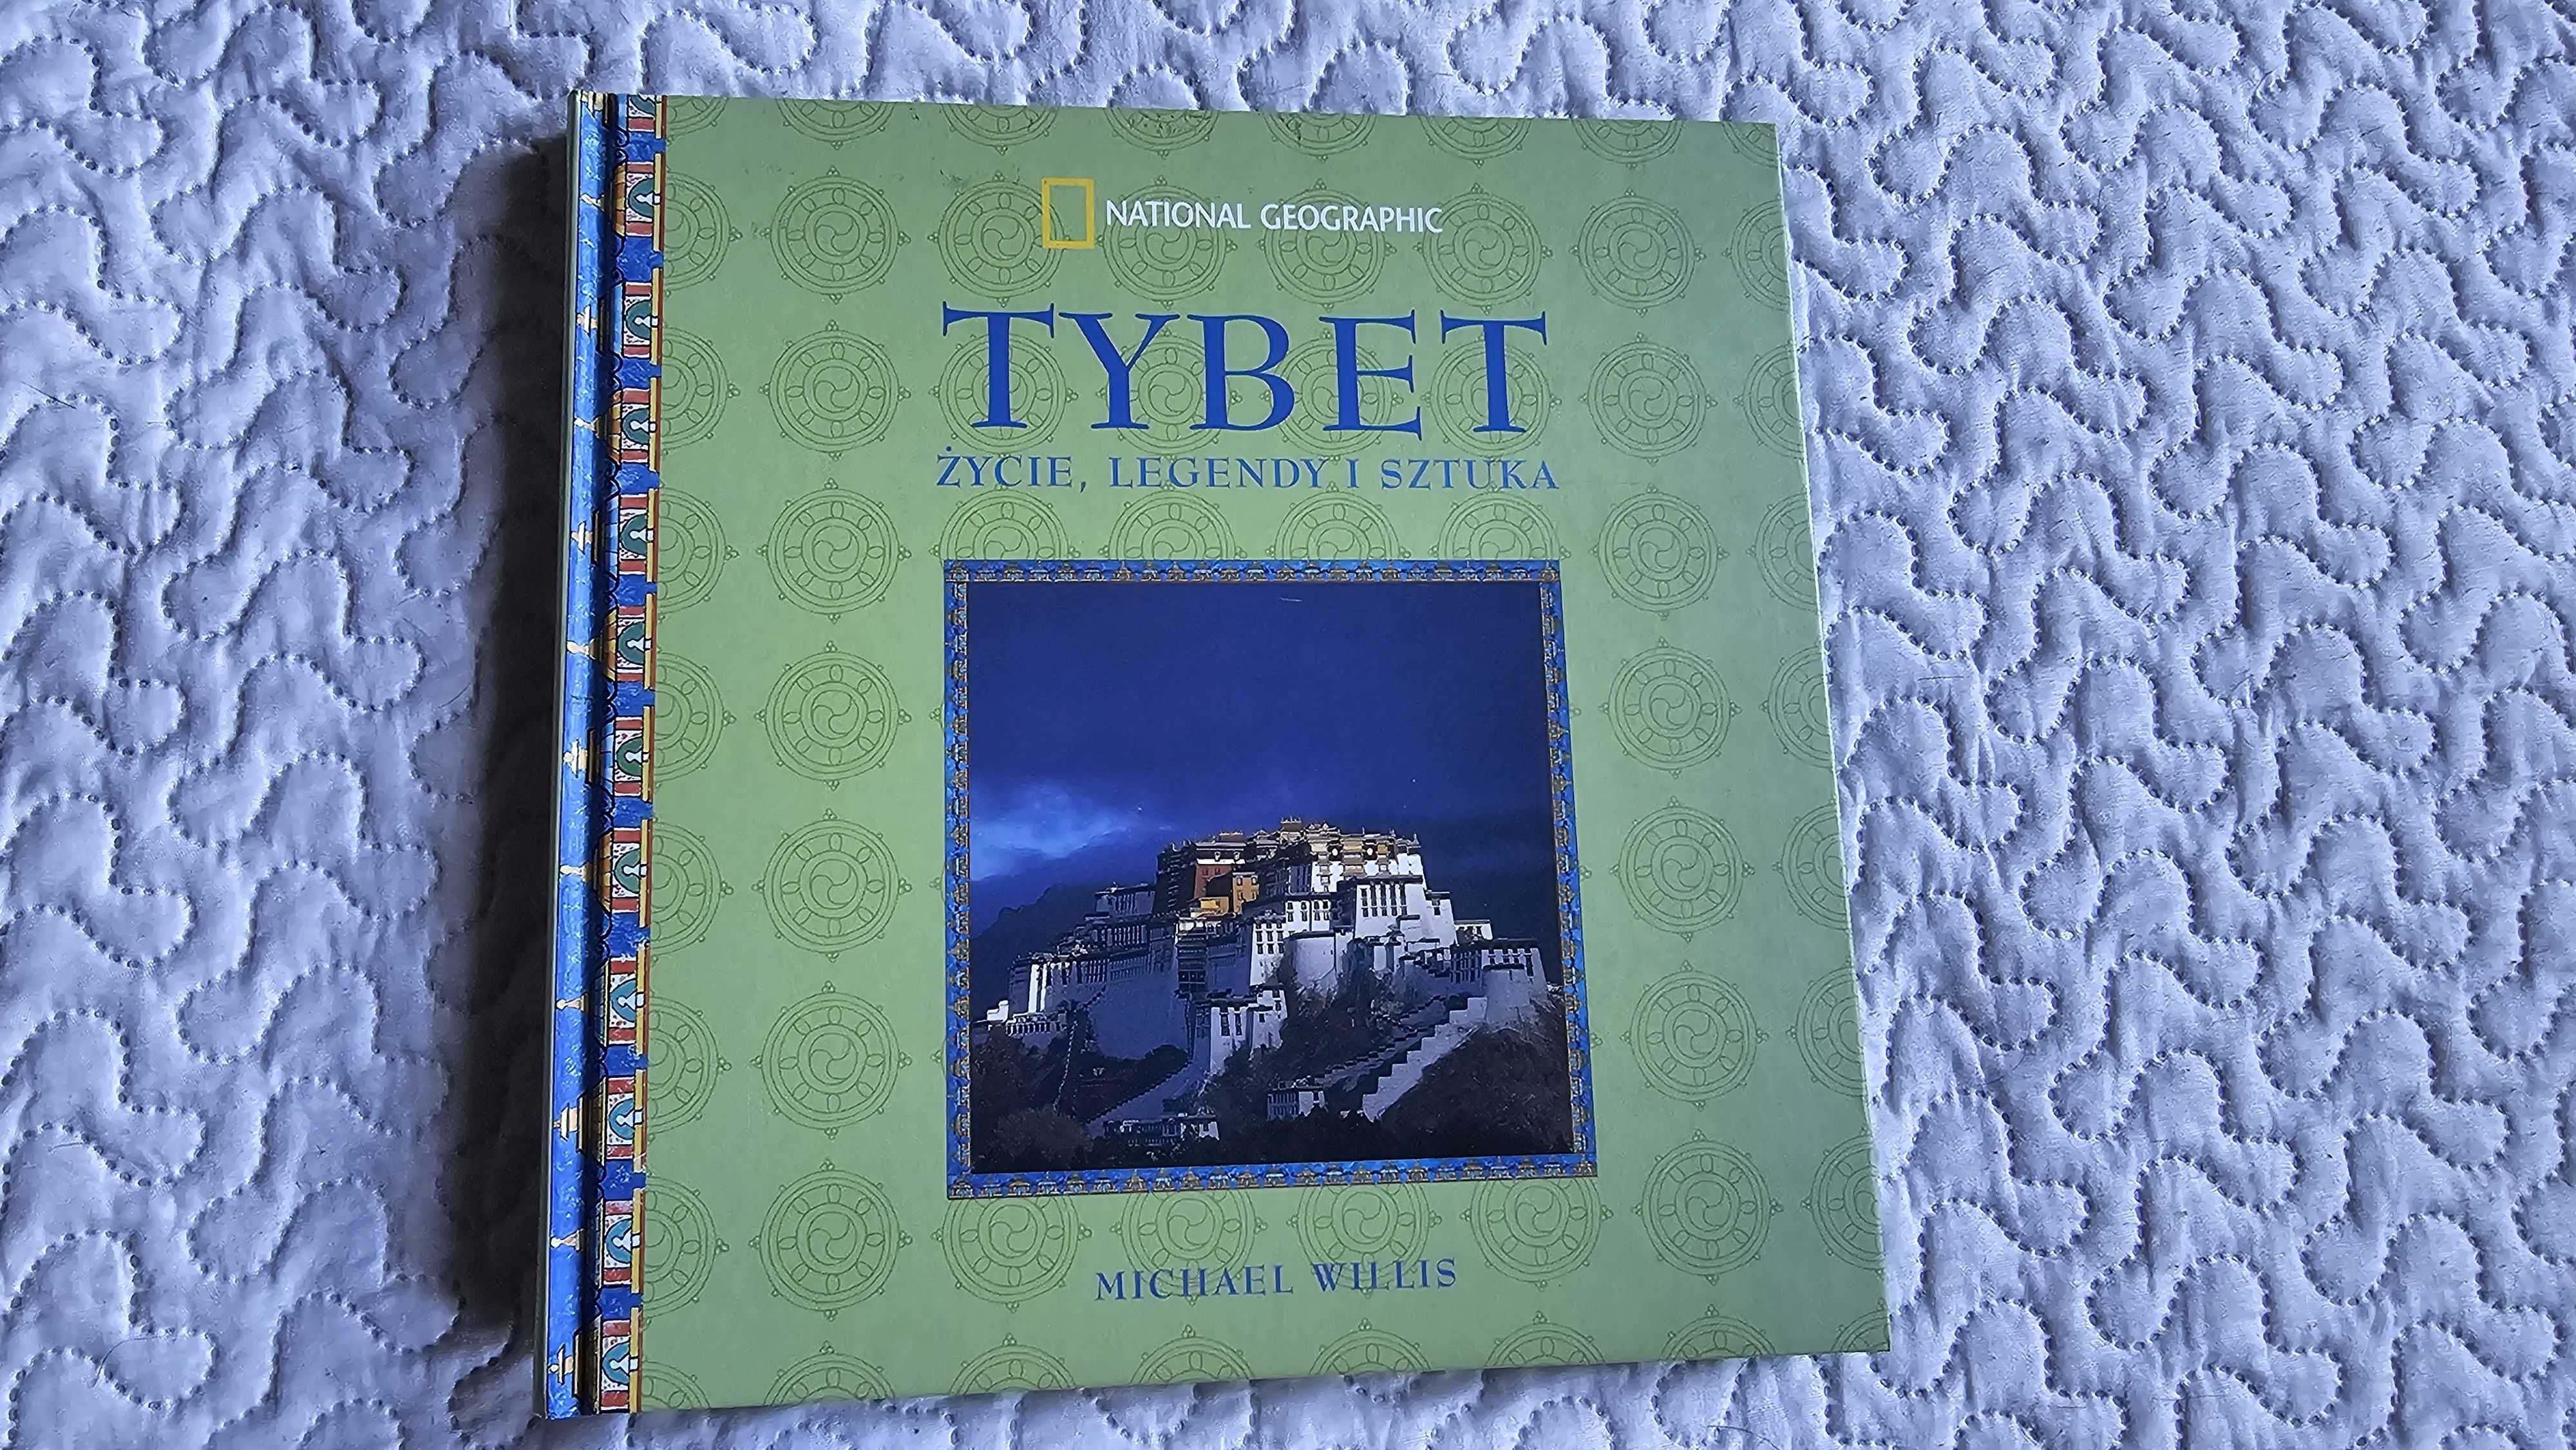 AZ Tybet Życie legendy sztuka Michael Willis National Geographic